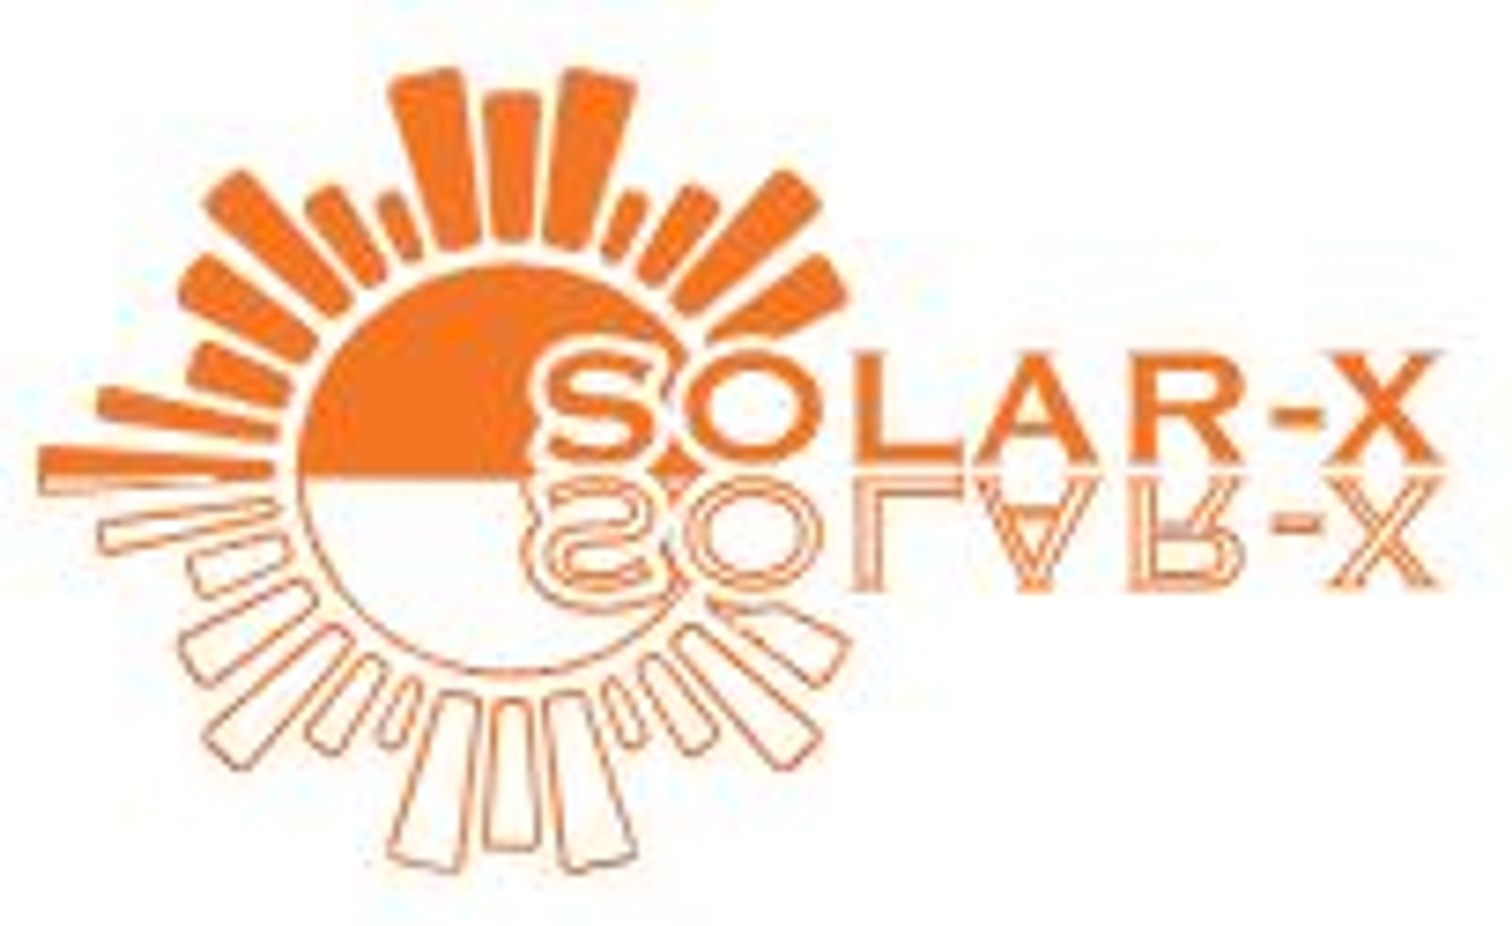 Solar-X Belgium logo